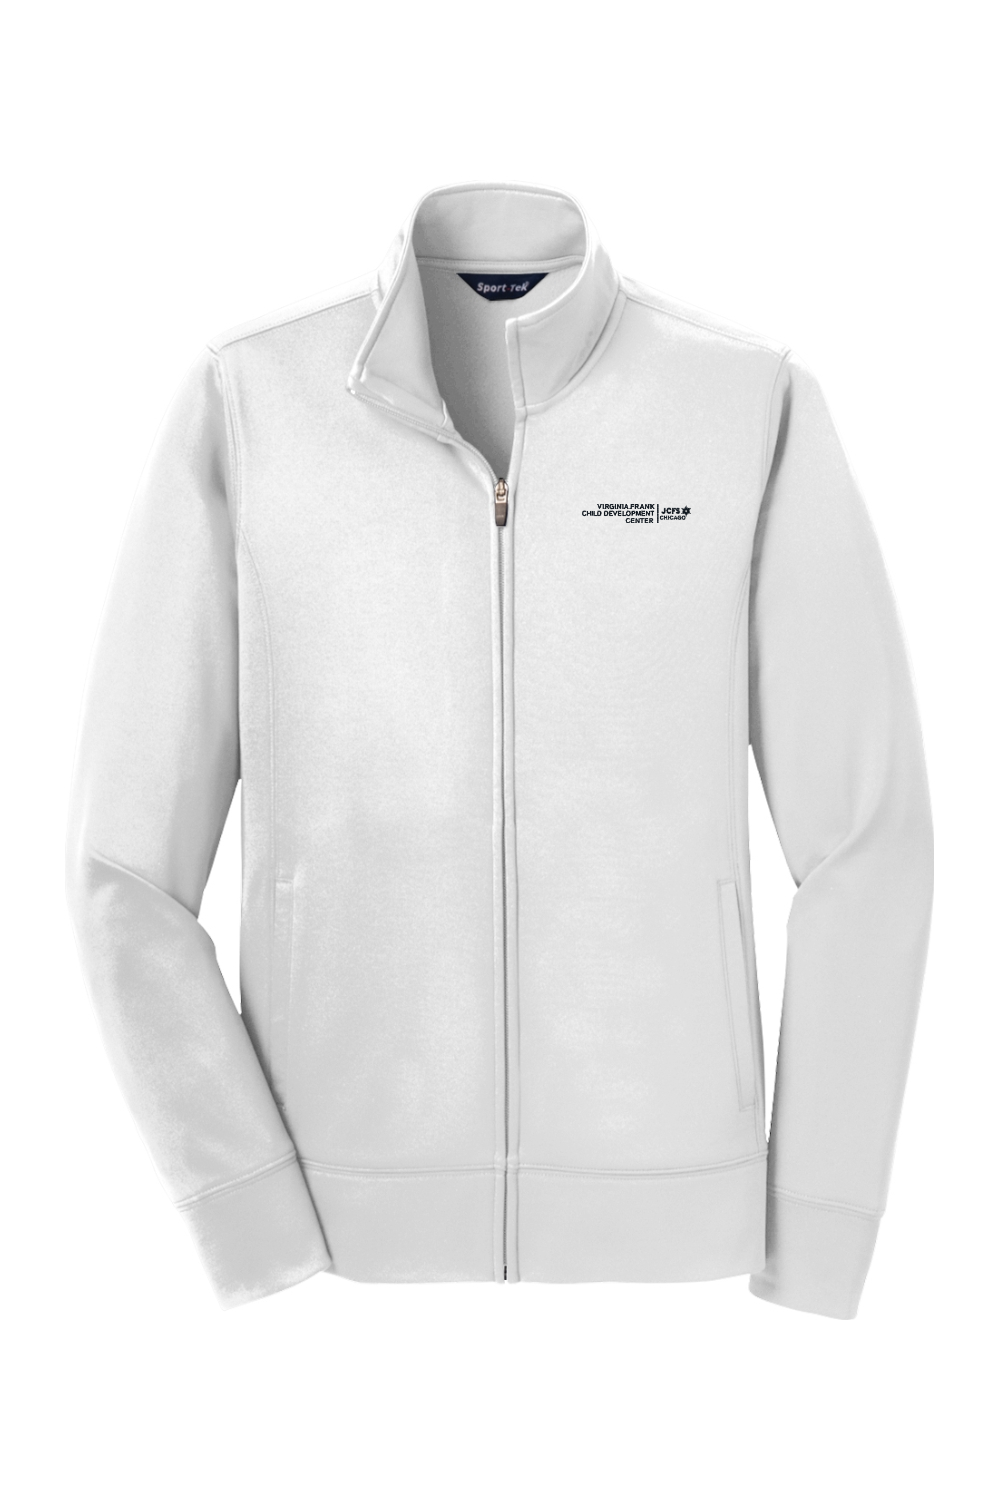 Sport-Tek Ladies Sport-Wick Fleece Full-Zip Jacket